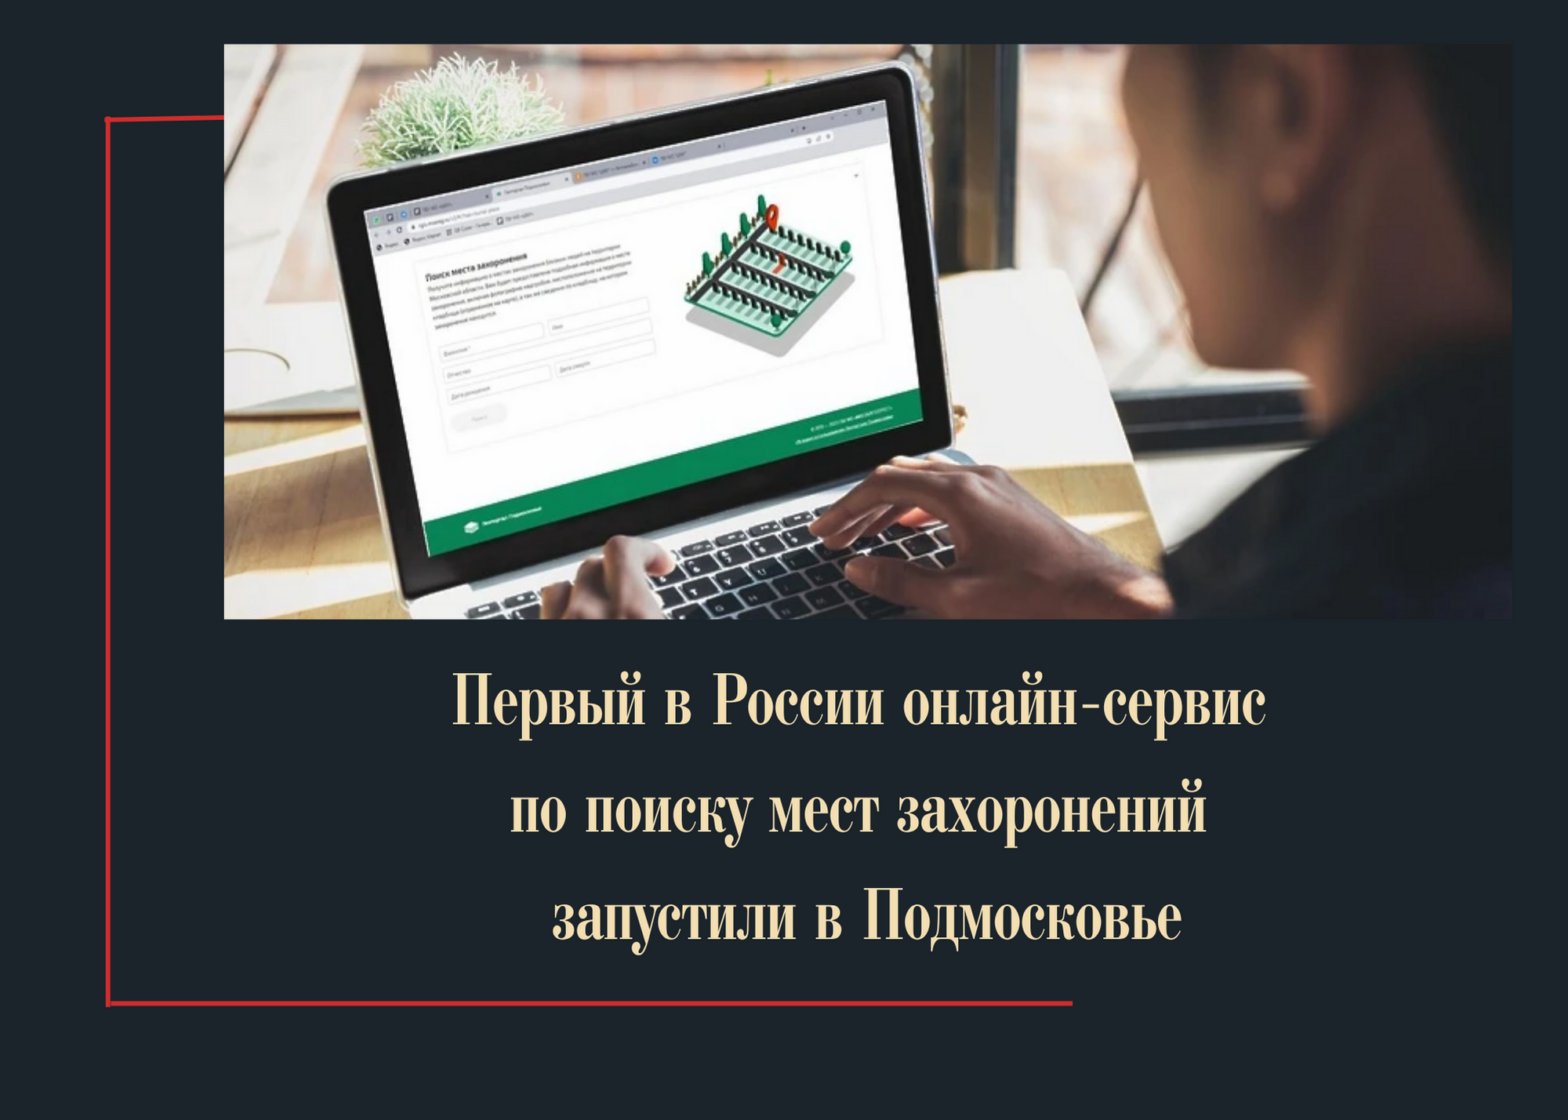 Первый в России онлайн-сервис по поиску мест захоронений запустили в Подмосковье